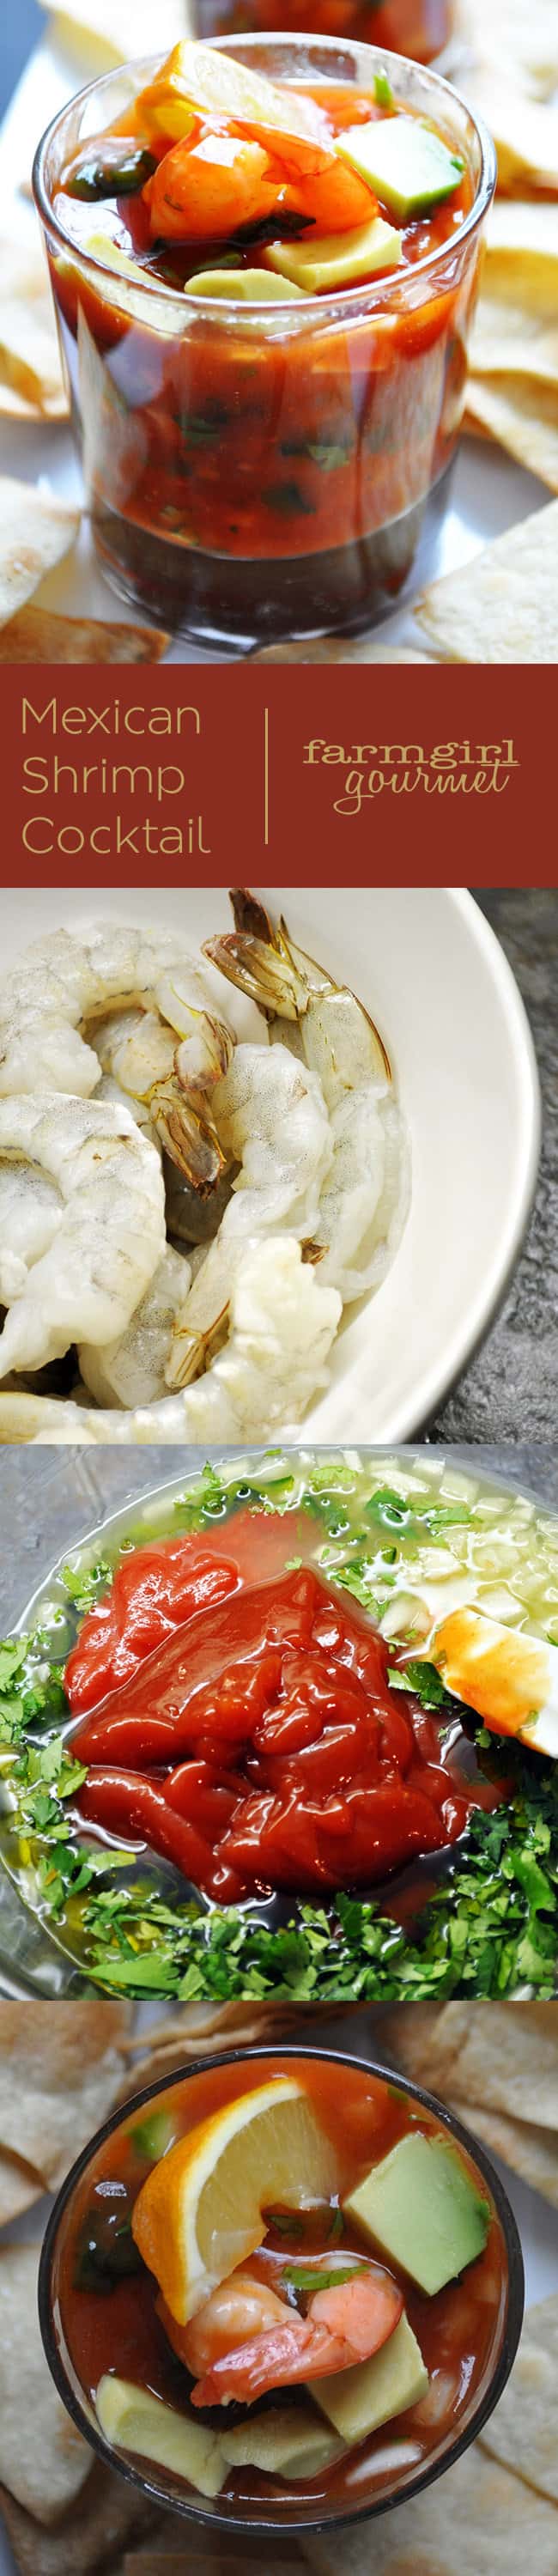 Mexican Shrimp Cocktail | farmgirlgourmet.com #recipe #shrimp